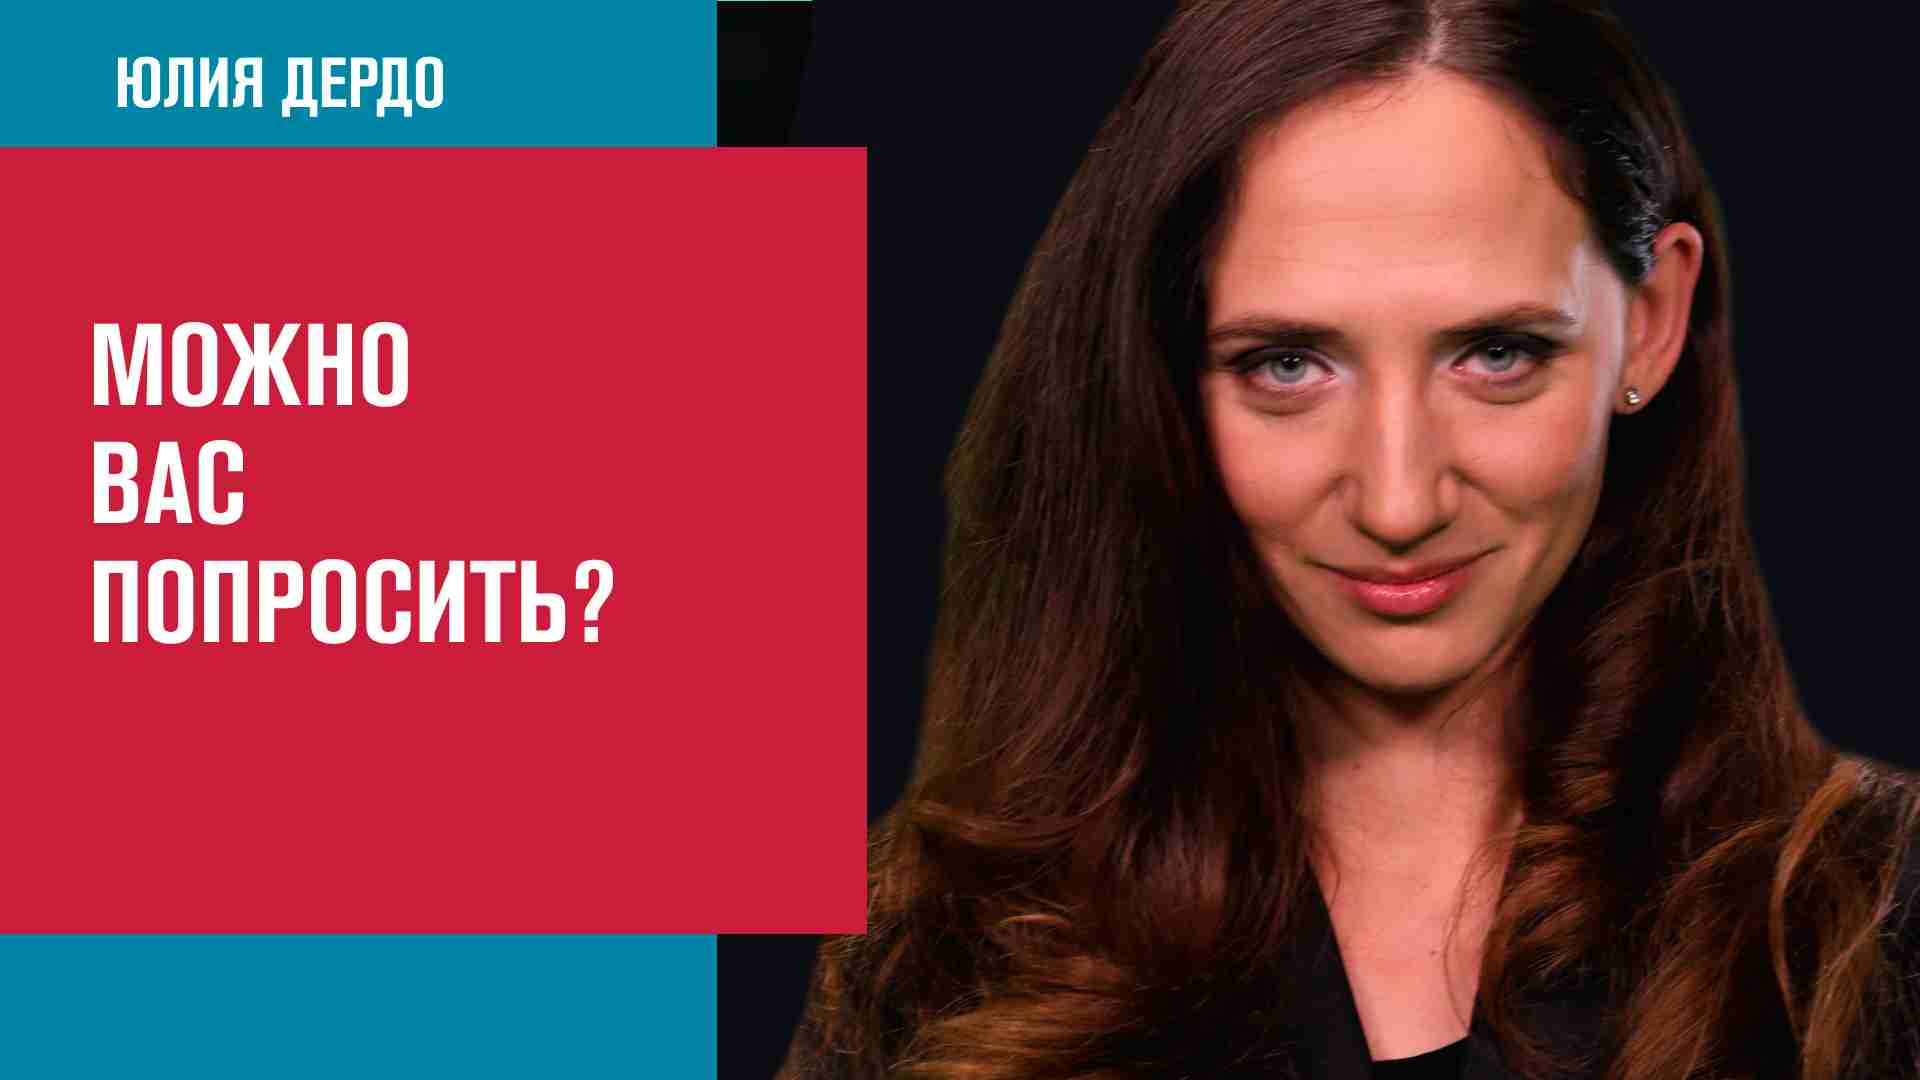 Психология просителя - Занимательная Дердология/Москва FM